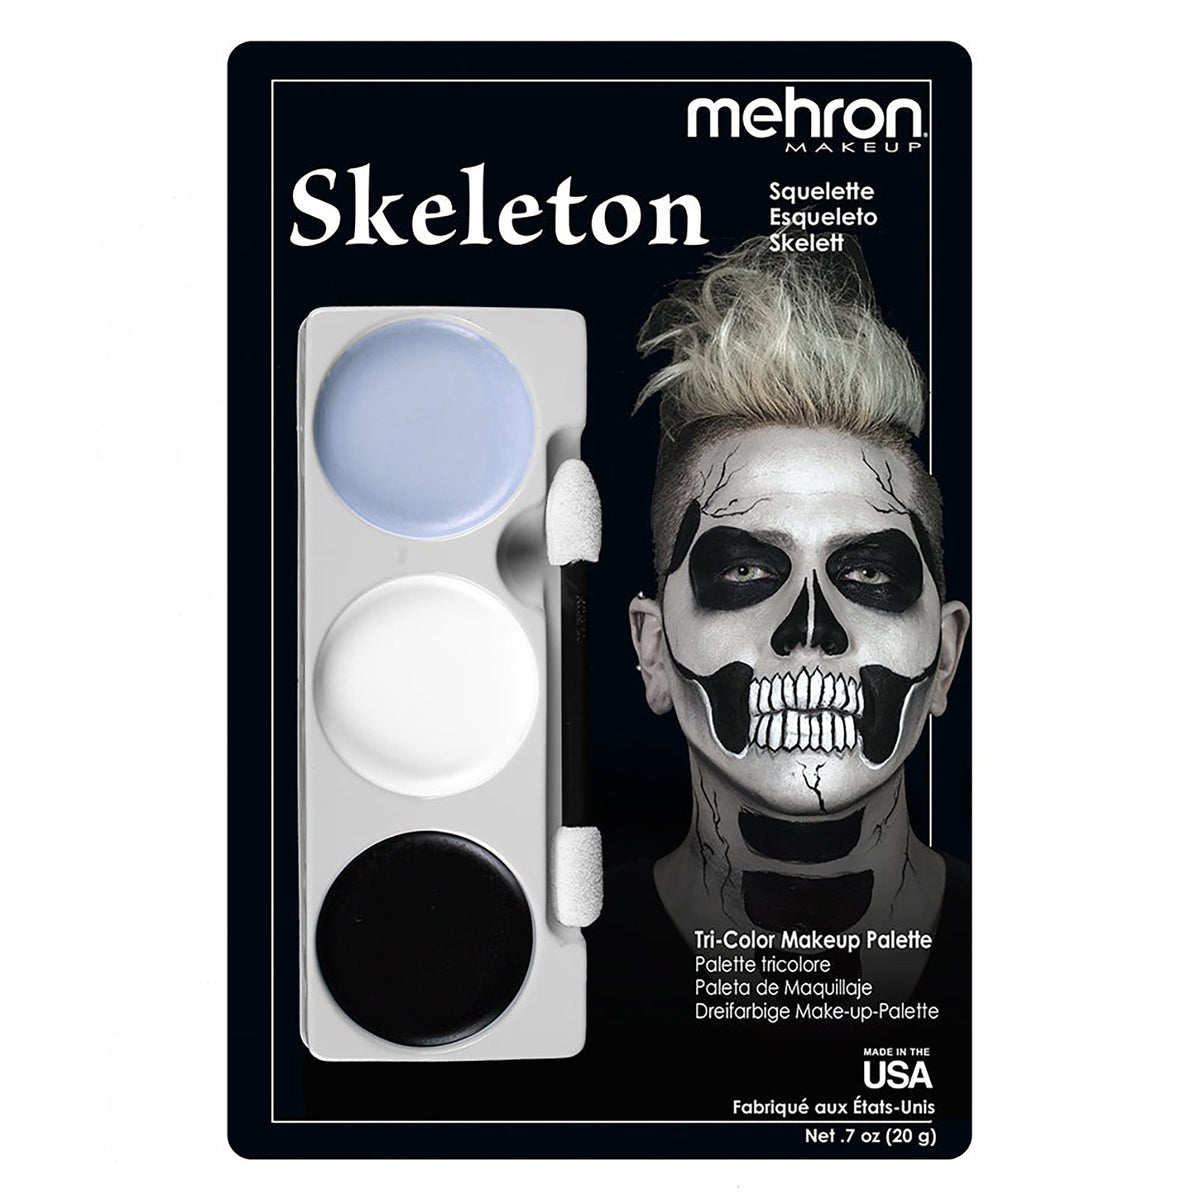 H M NOUVEAUTE LTEE Costume Accessories Mehron Skeleton Tri-Color Makeup Palette, 7 Oz, 1 Count